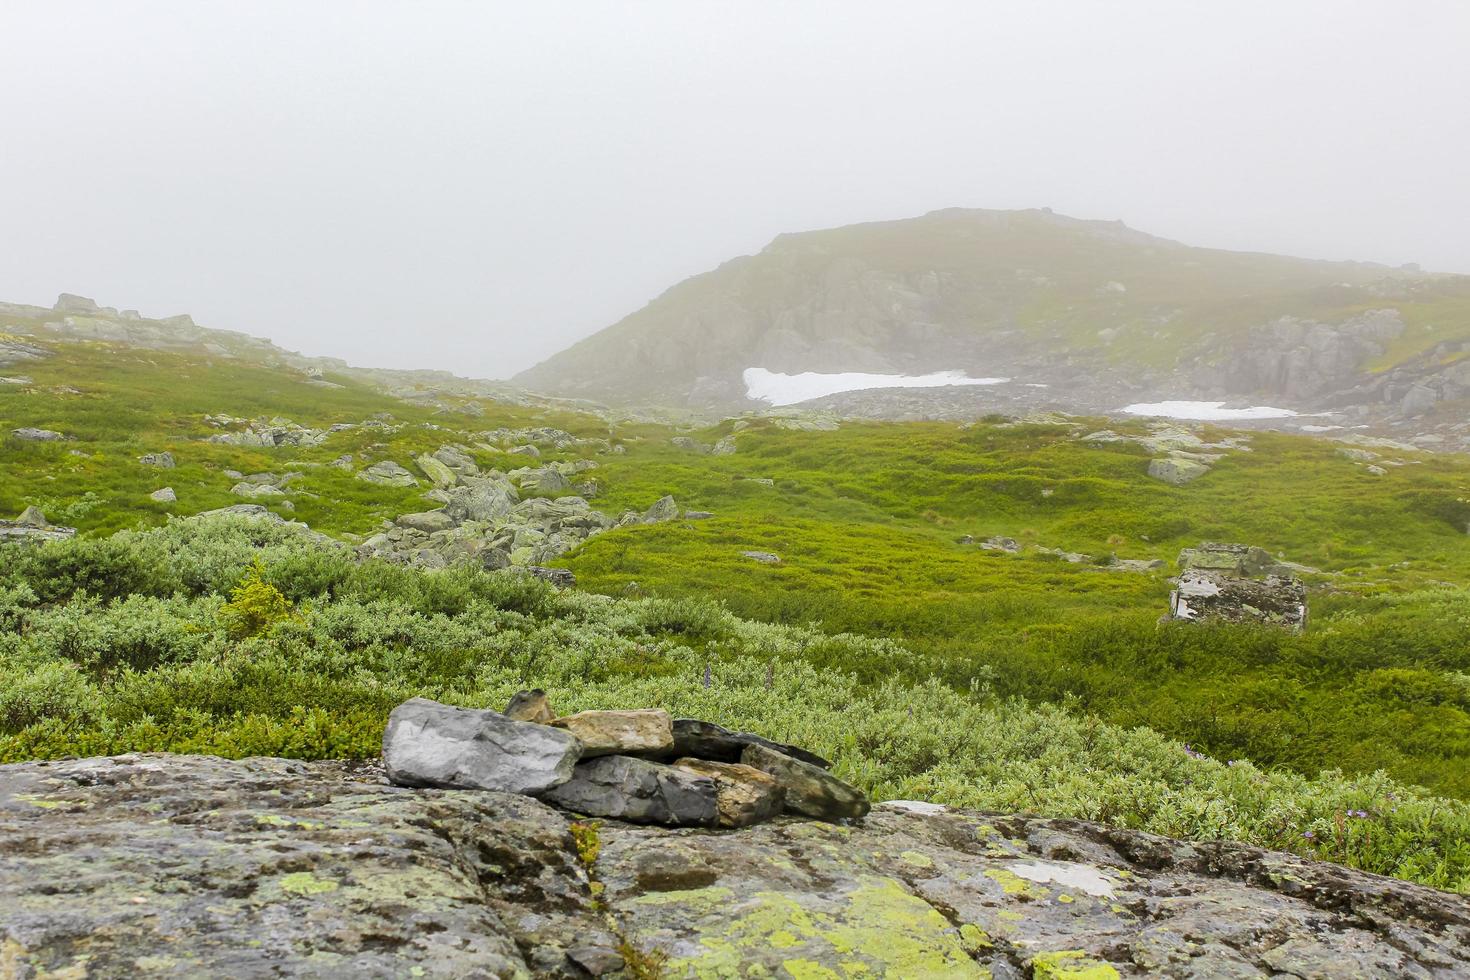 nebbia, nuvole, rocce e scogliere sulla montagna veslehodn veslehorn, norvegia. foto